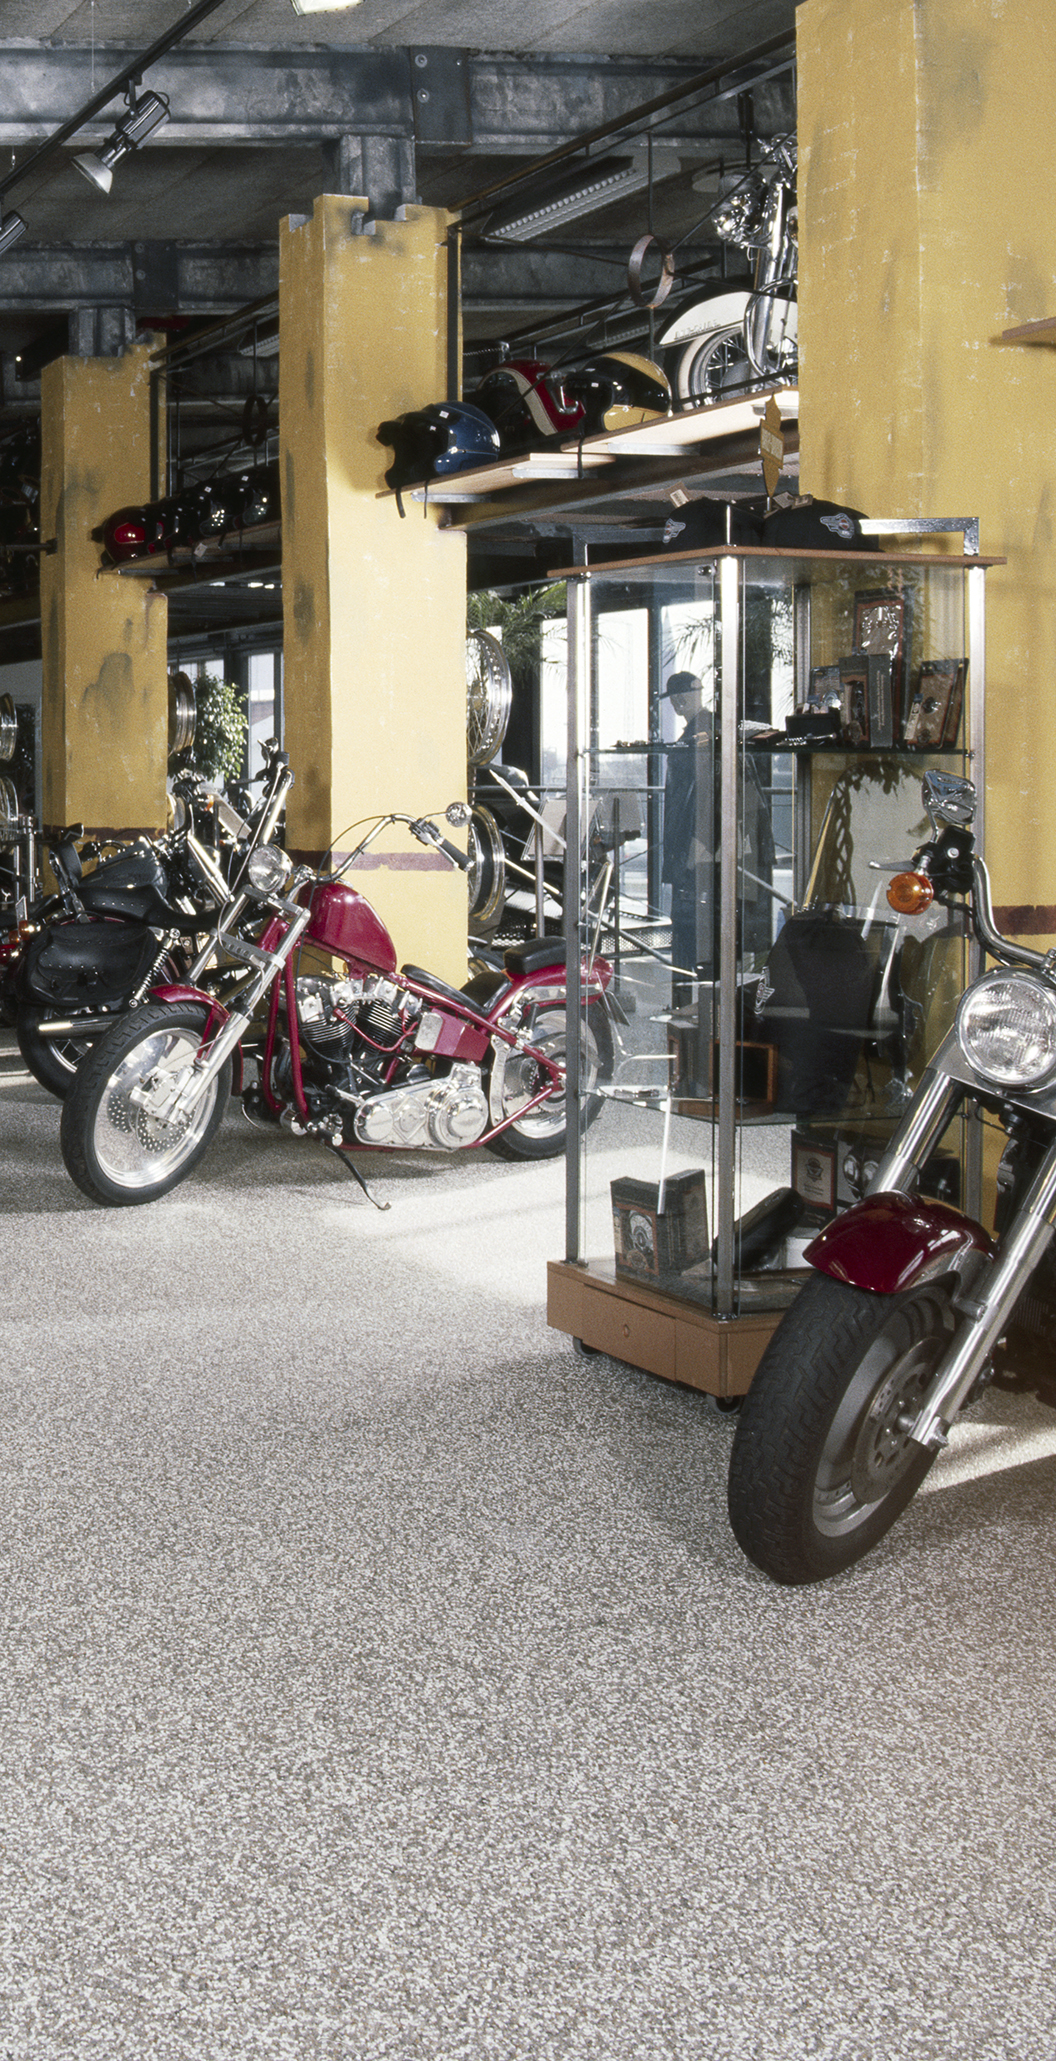 Stentæppe og showroomgulv i anvendelse i motorcykeludstilling hos Harley-Davidson i Roskilde leveret af ekspert i og leverandør af materialer til fugefri gulve, stentæpper, terrazzogulve, skridsikre gulve, slidstærke gulve, slidsikre gulve og udendørs belægning Stonewalk